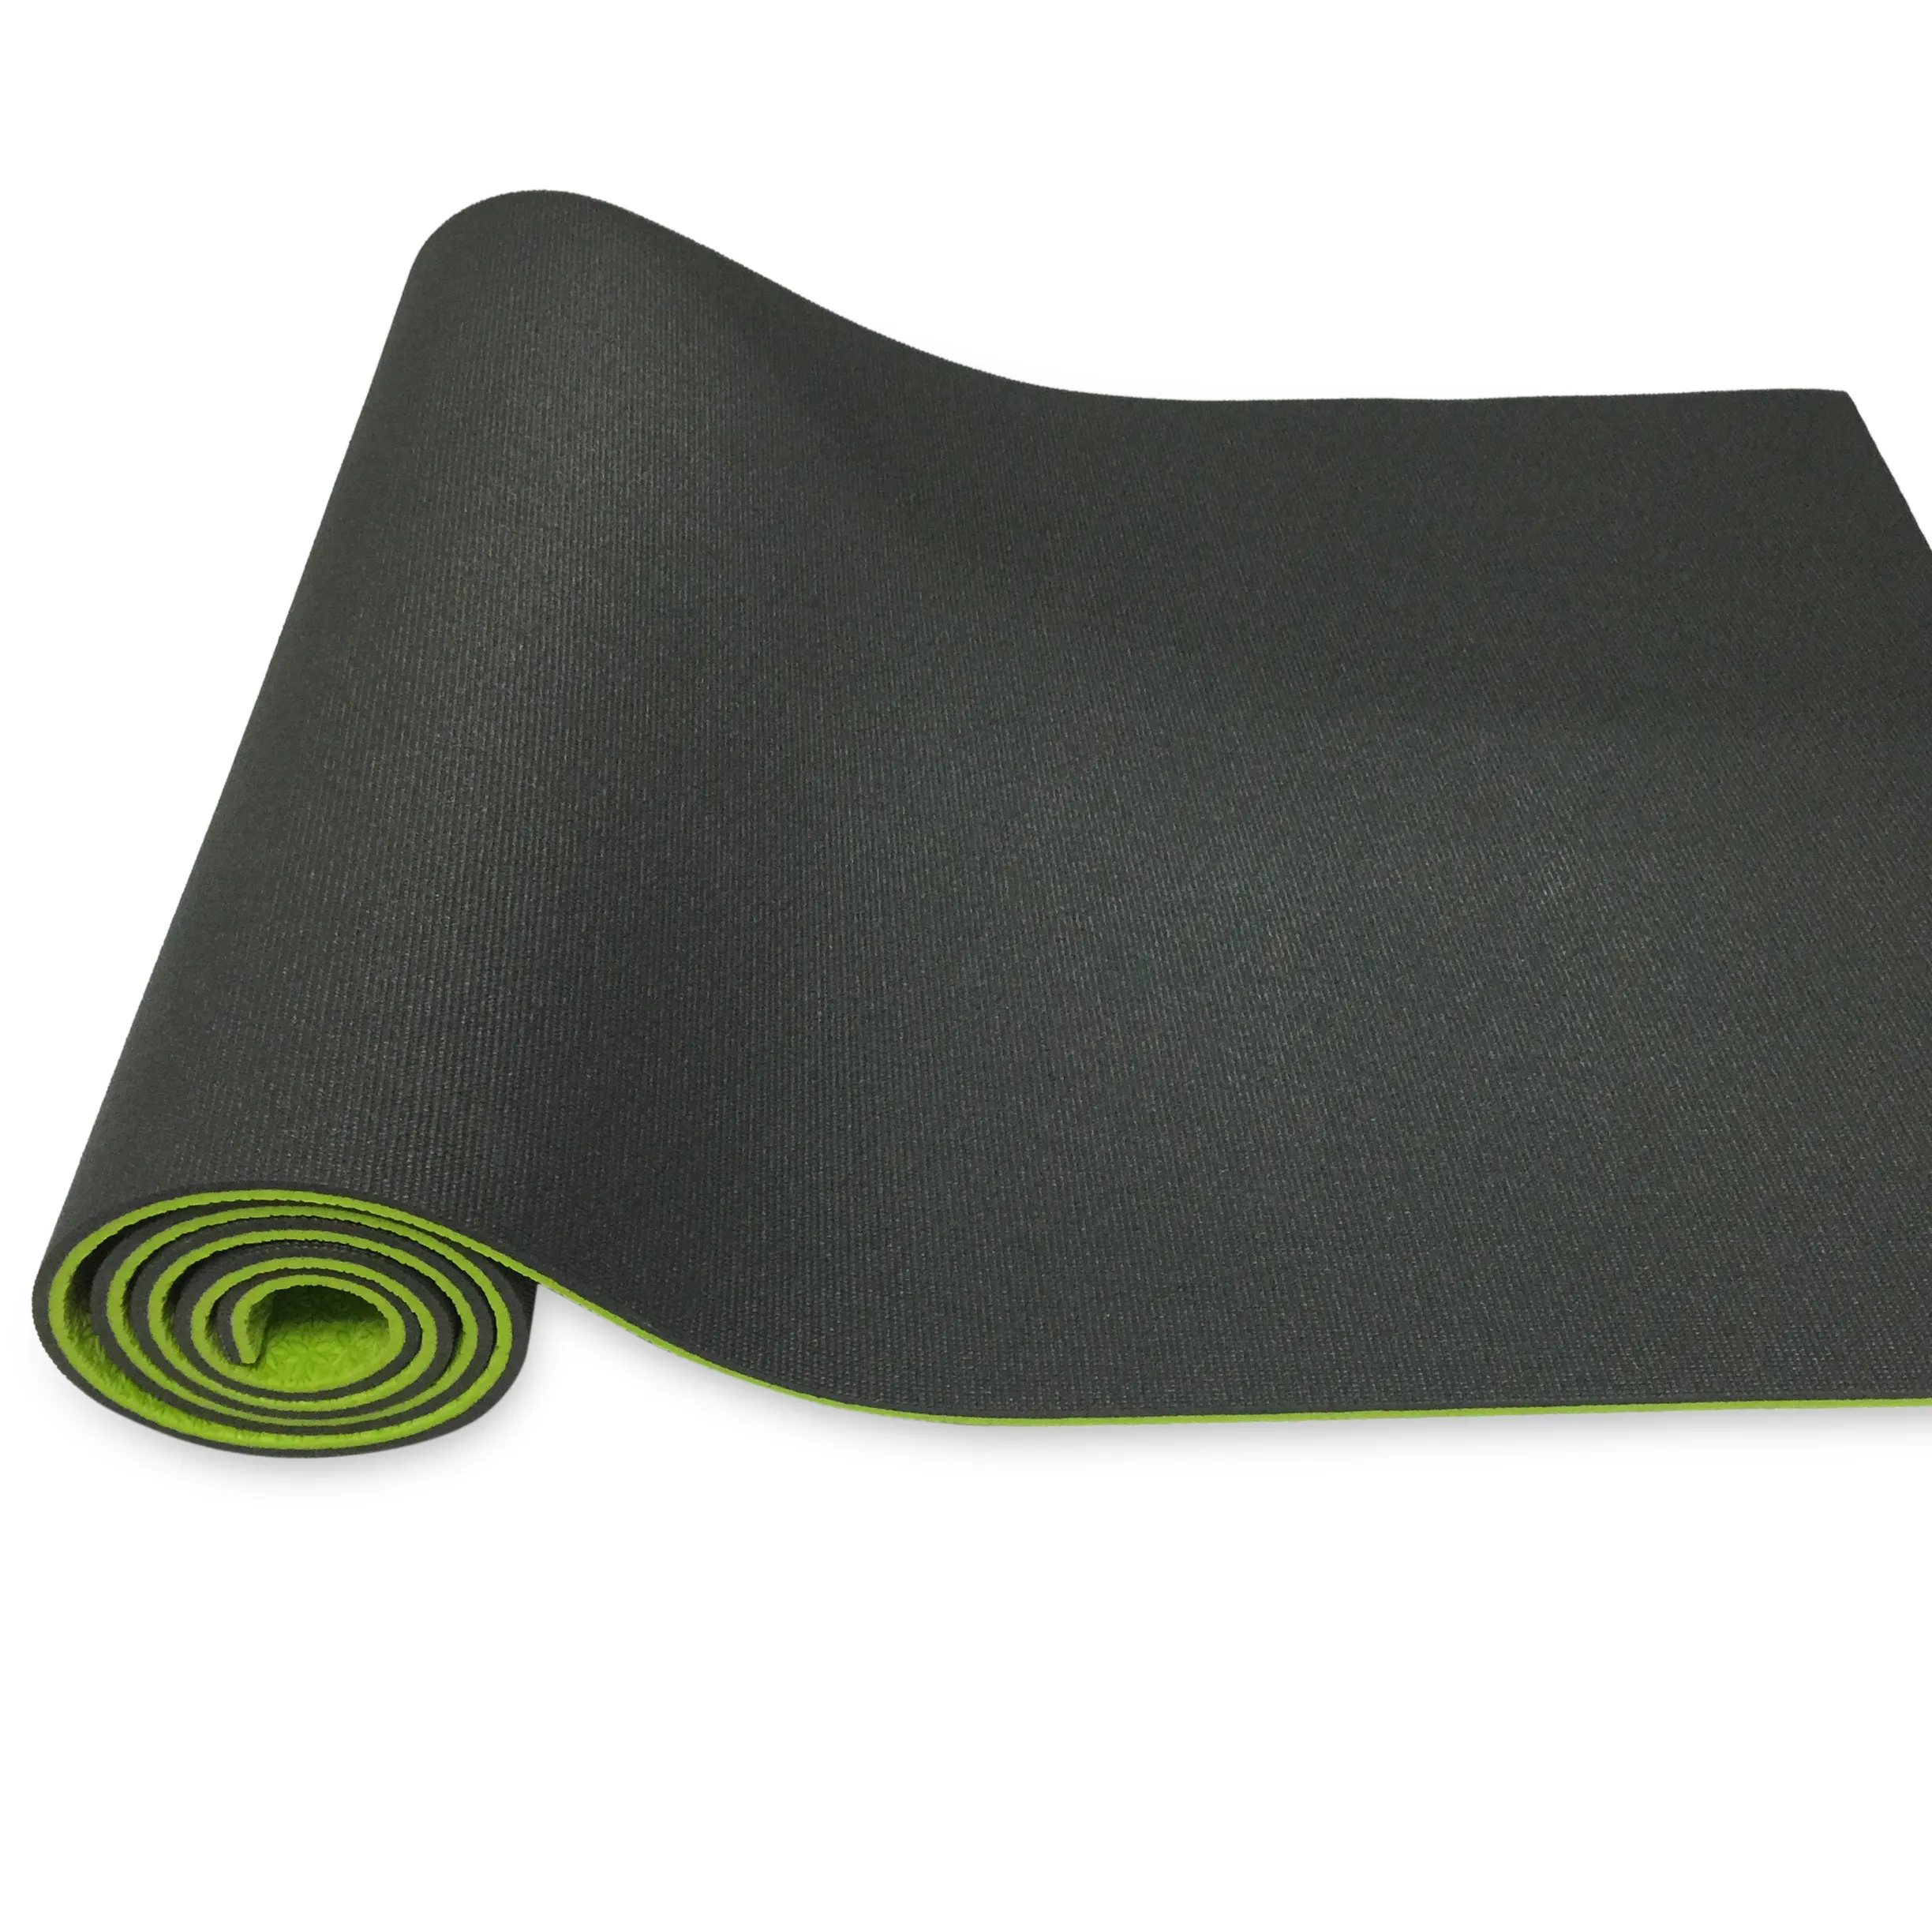 Плотные коврики. Ojas коврик для йоги. Коврик для йоги Ojas Shakti Pro 183*60*0,6 см. Ojas Ocean коврик для йоги. Коврик для йоги и фитнеса Liteweights 180 60 1см 5410lw.